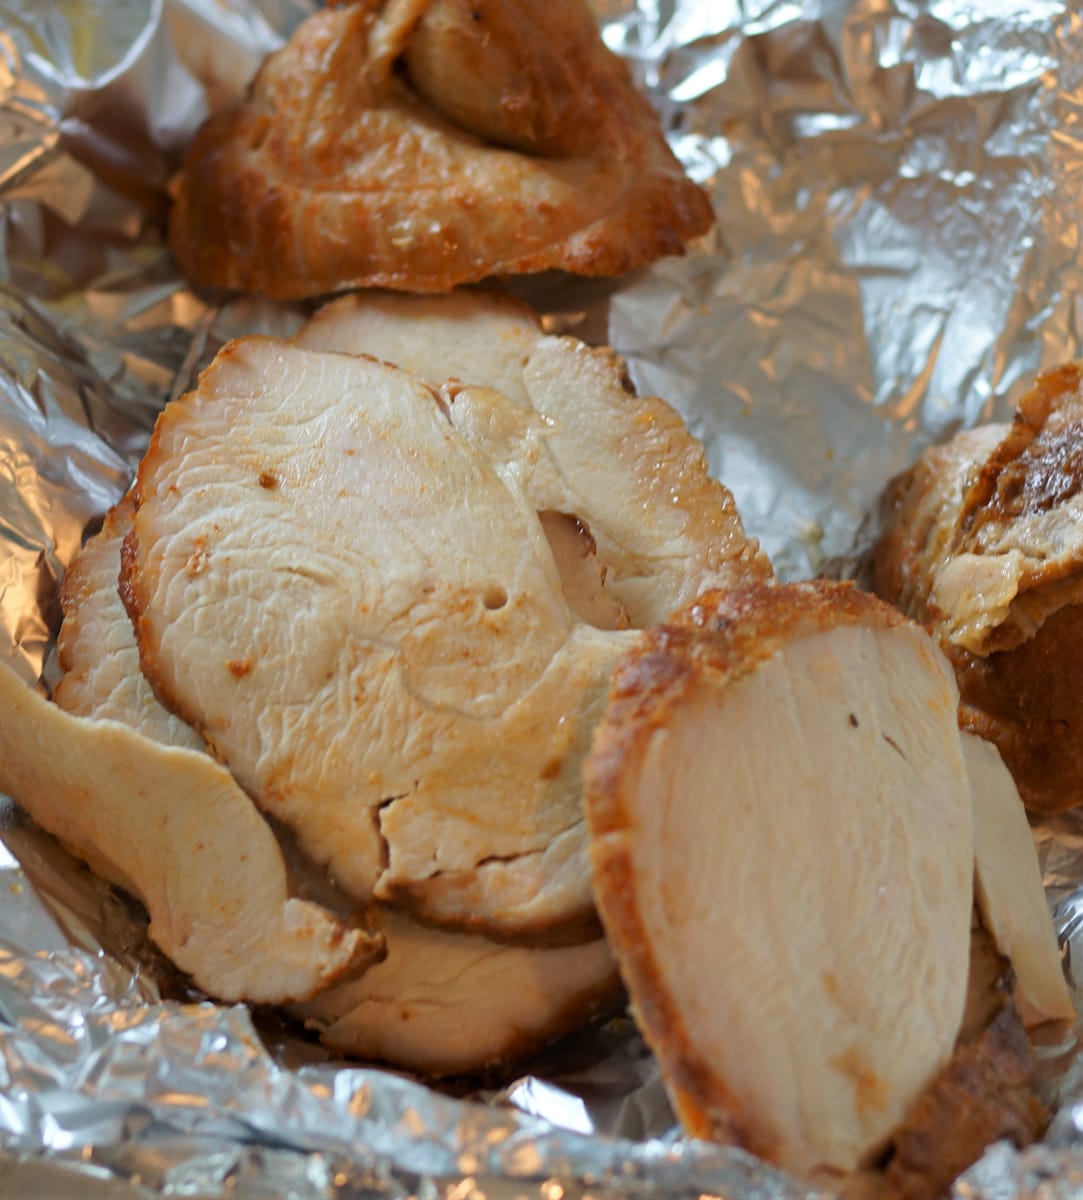 Slices of roasted turkey breast.